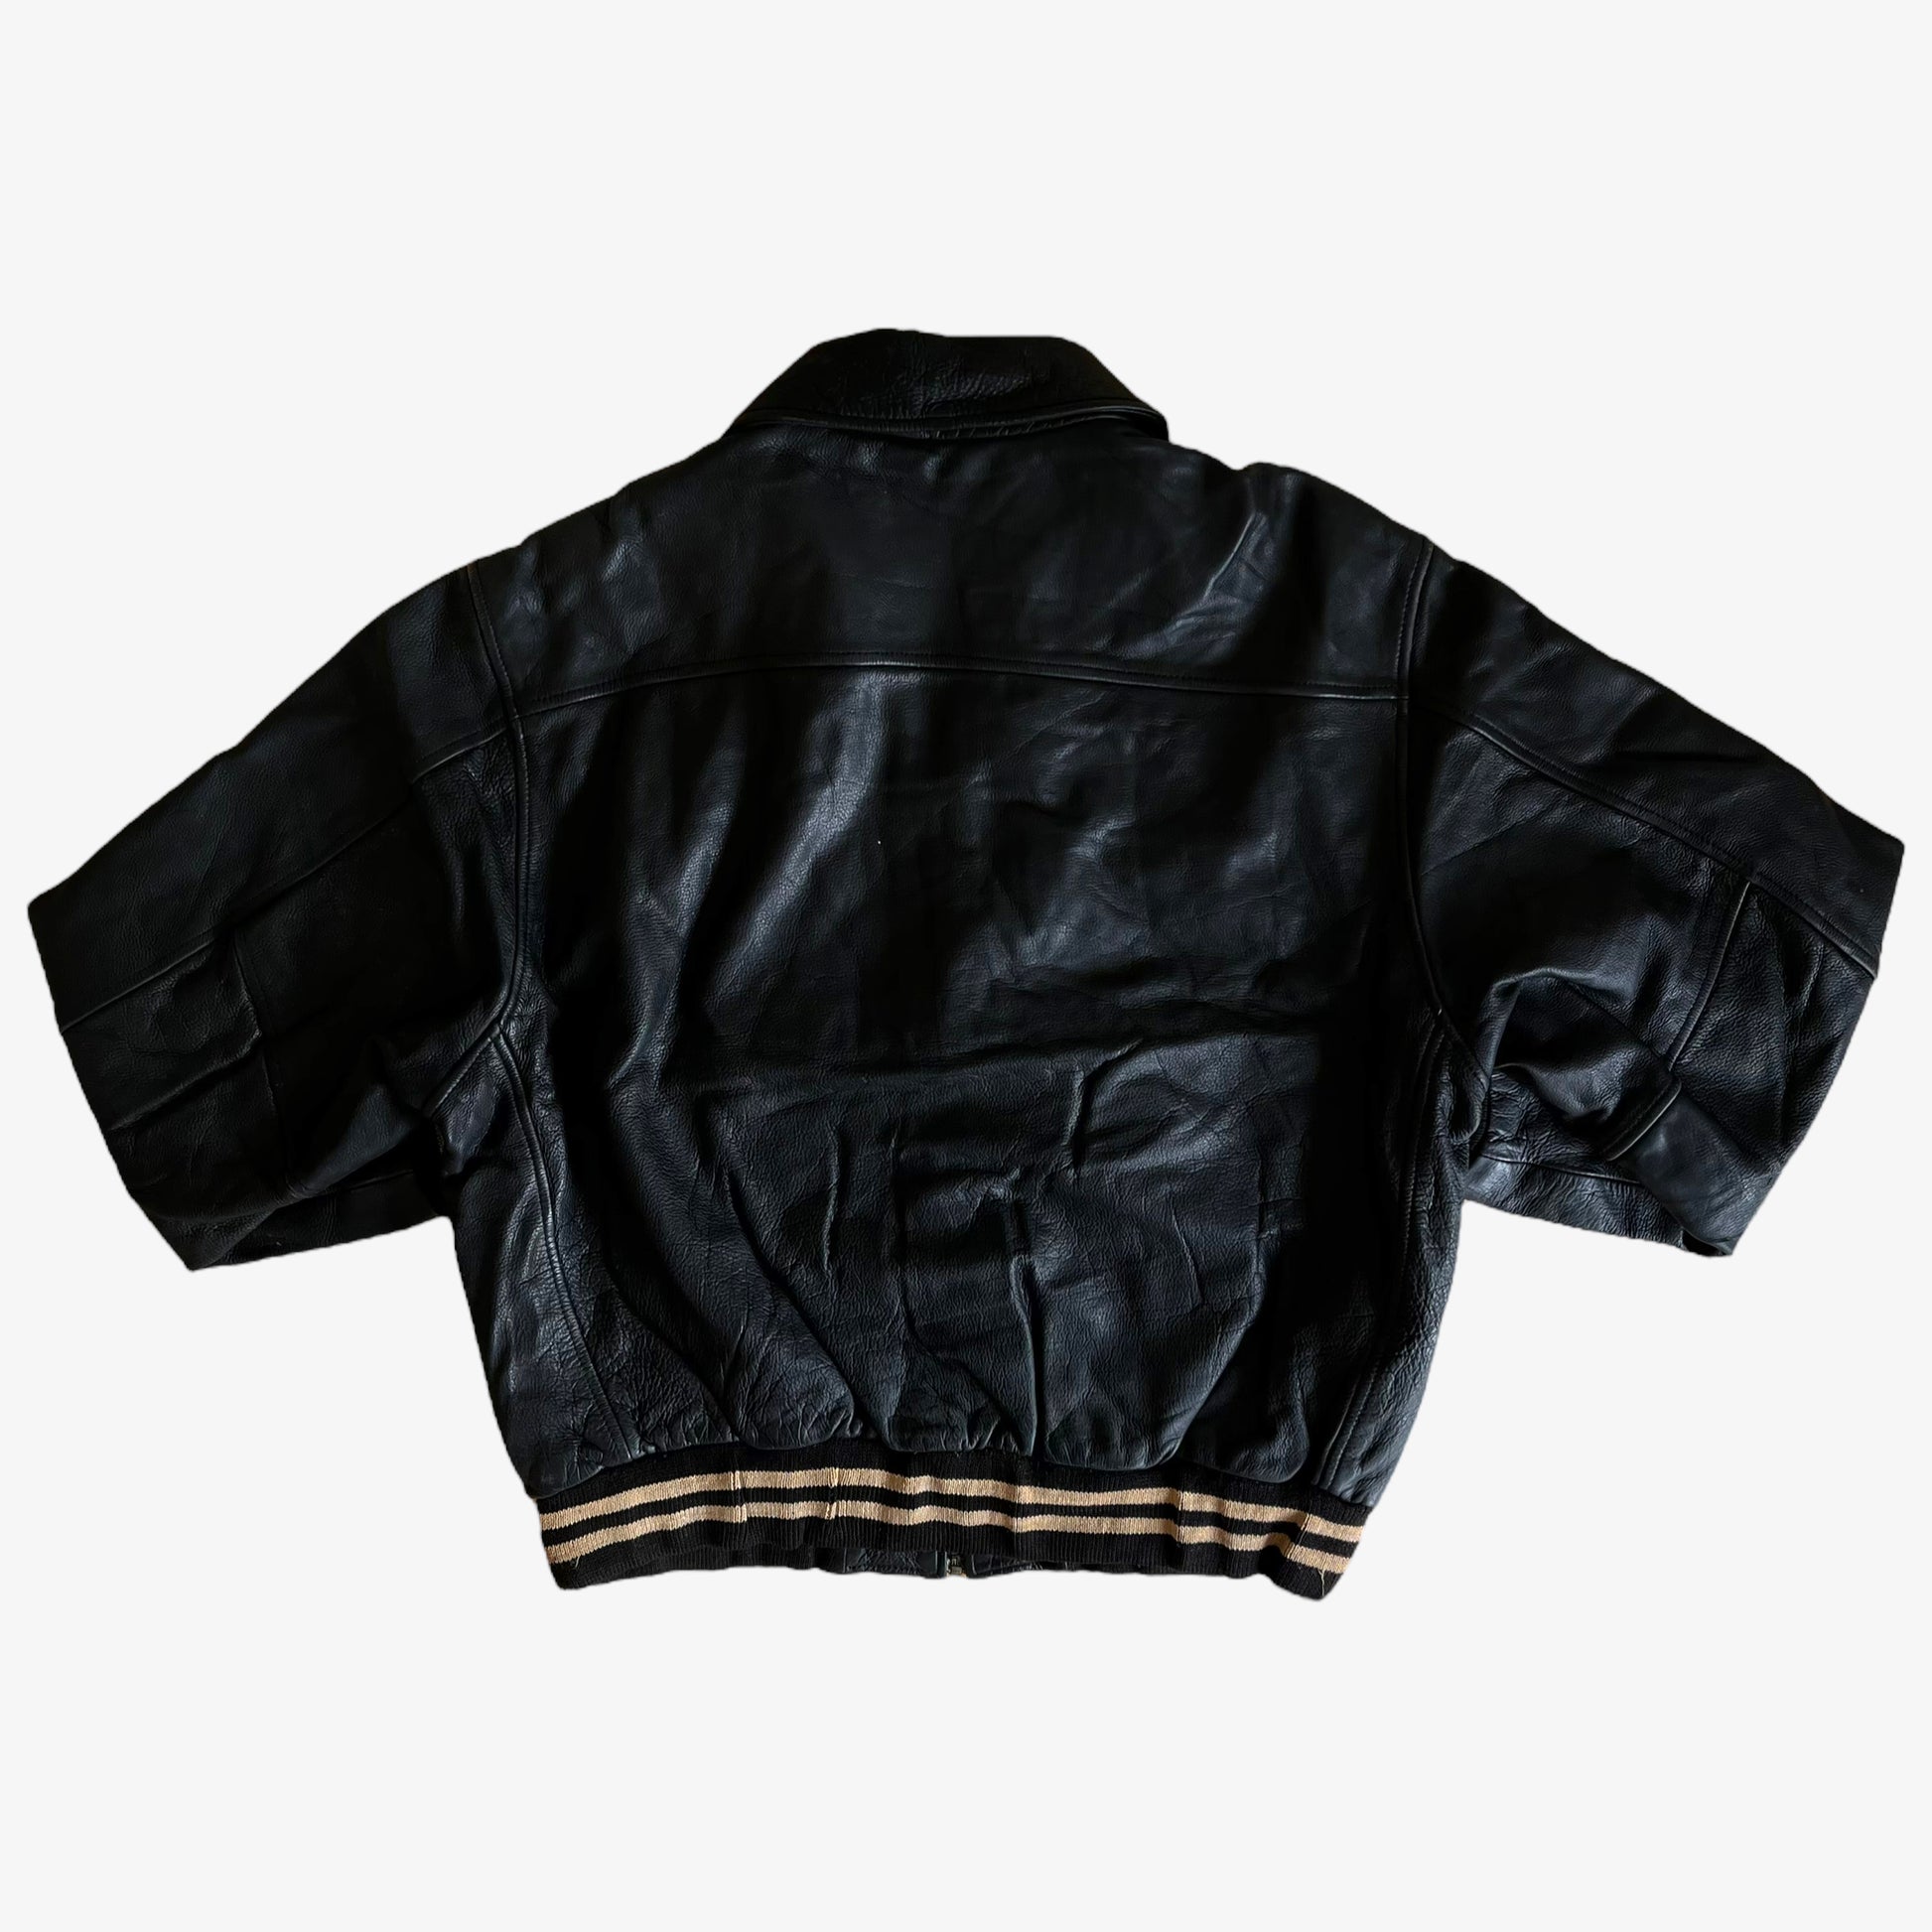 Vintage 1990s Redskins Black Leather Varsity Jacket Back - Casspios Dream